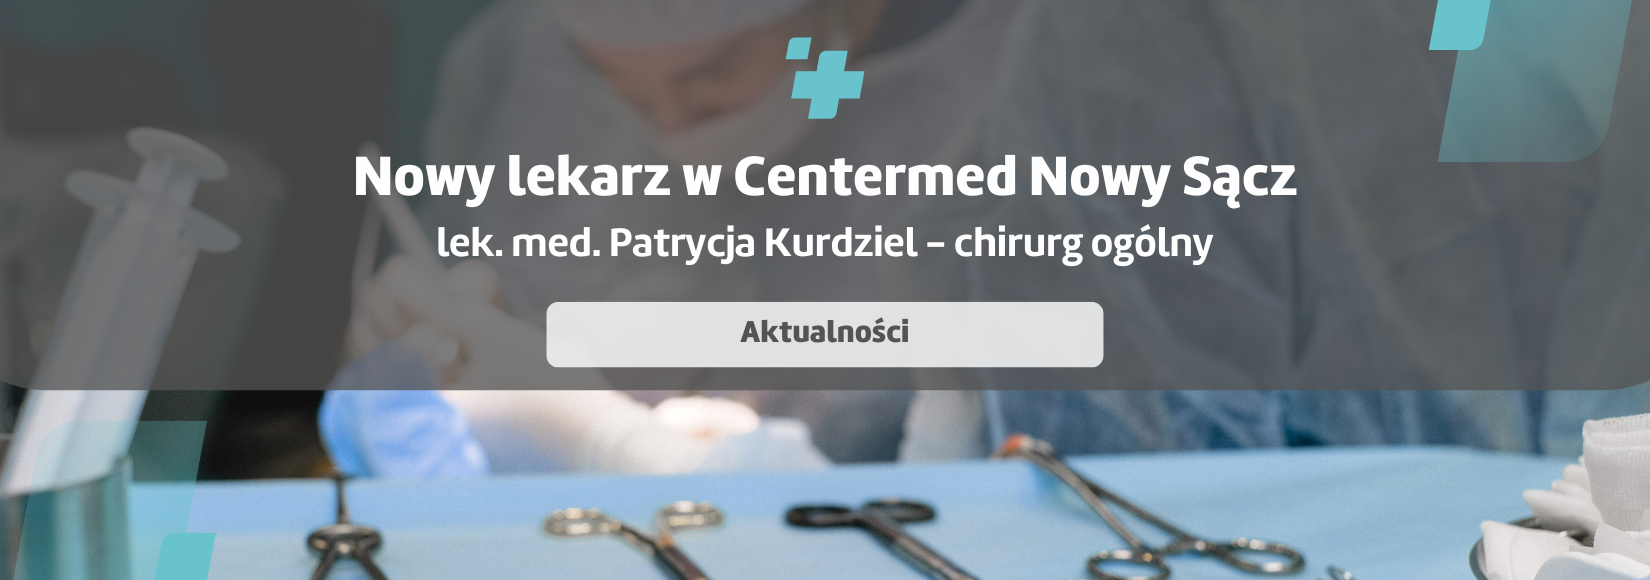 Nowy specjalista w CenterMed Nowy Sącz - lek. med. Patrycja Kurdziel